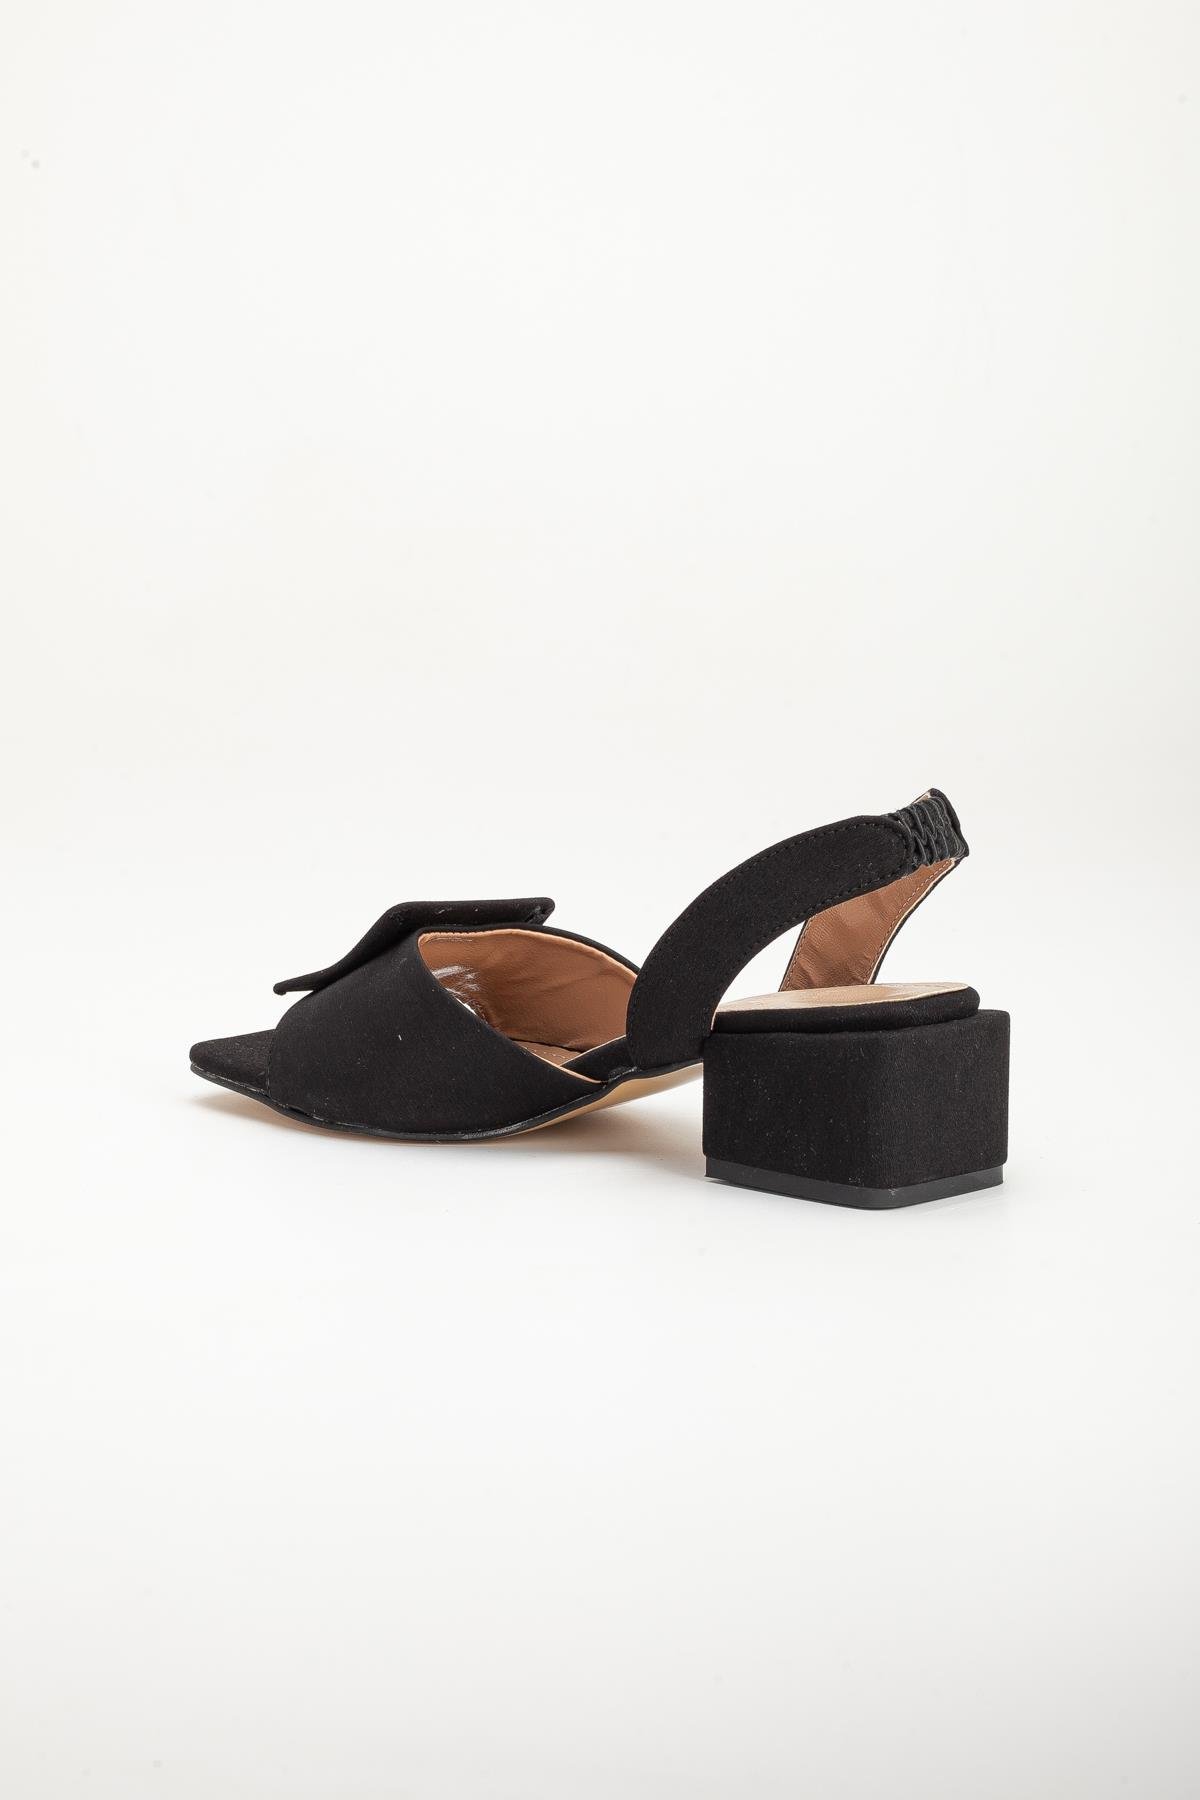 Zara Saten Kalın Tokalı Siyah Kadın Topuklu Ayakkabı